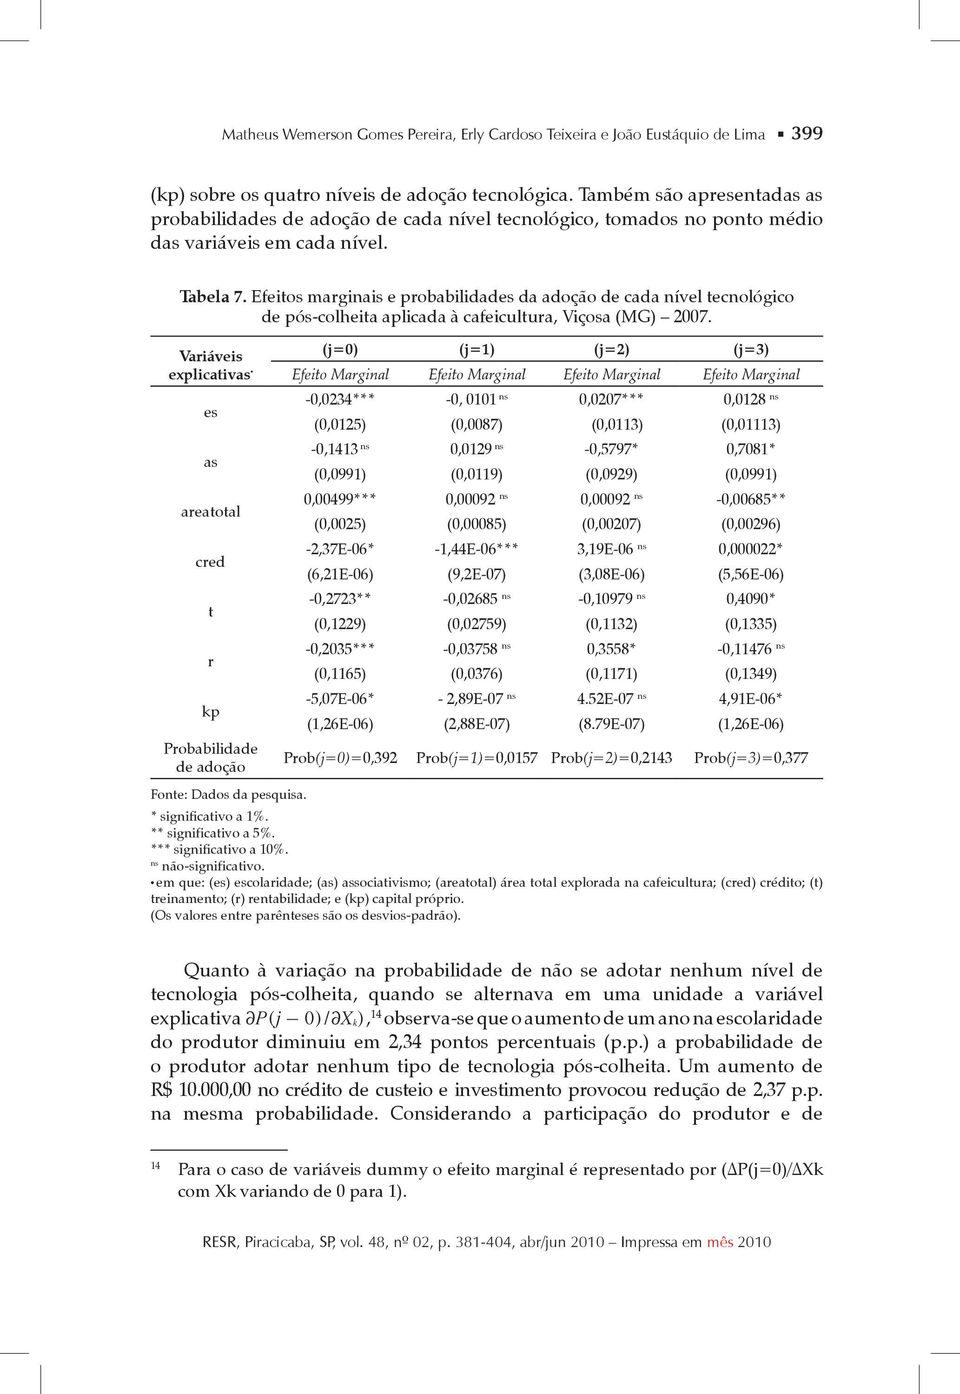 Efeitos marginais e probabilidades da adoção de cada nível tecnológico de pós-colheita aplicada à cafeicultura, Viçosa (MG) 2007.